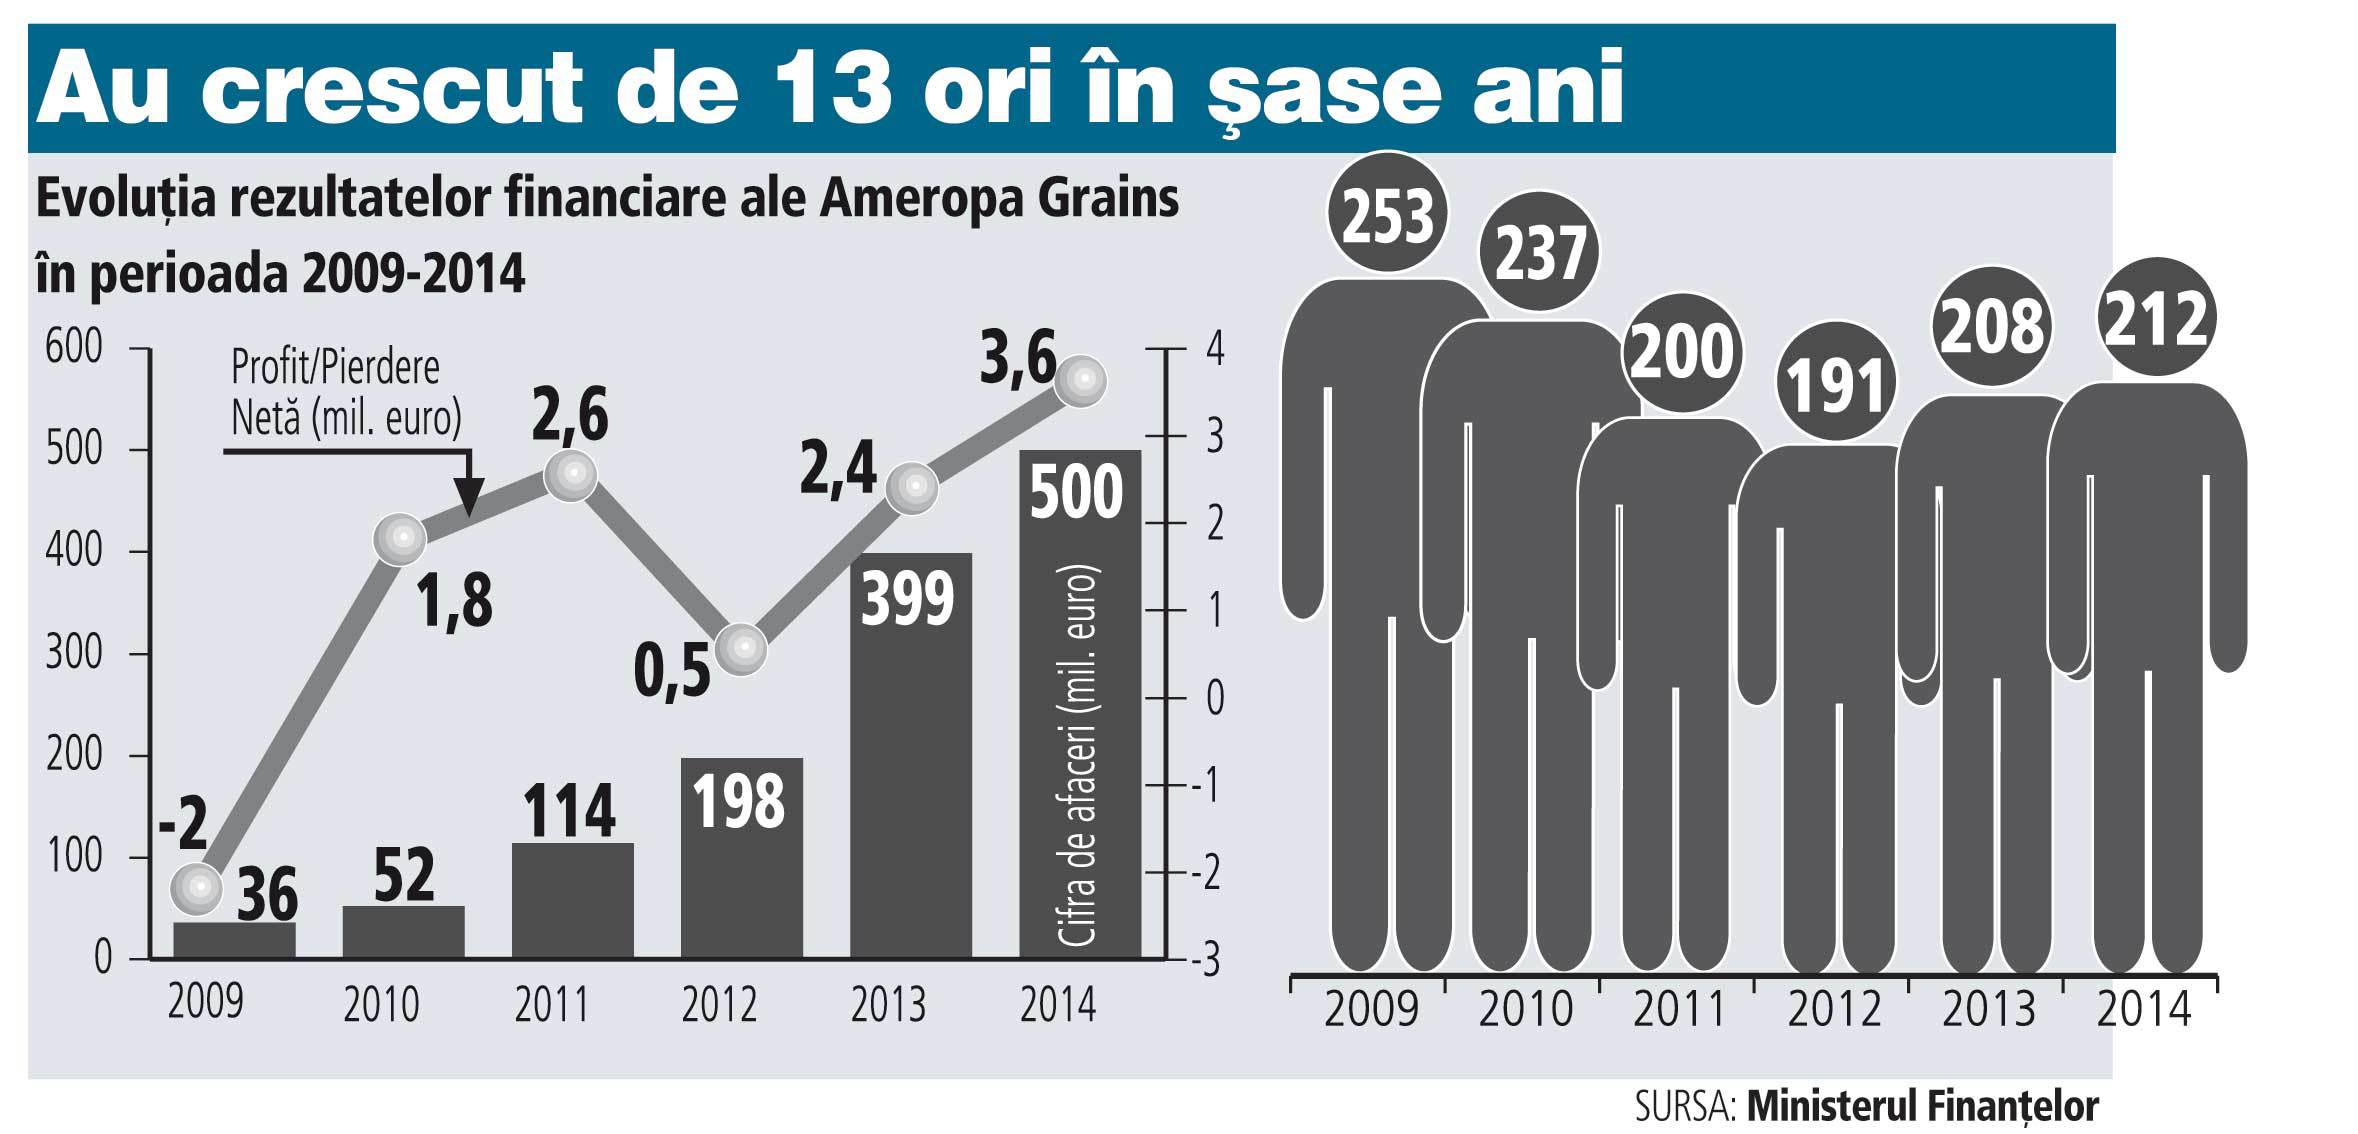 Elveţienii de la Ameropa au atins pragul de 500 mil. euro din afacerile cu cereale şi distribuţie de îngrăşăminte. În 2009 aveau doar 36 mil. euro